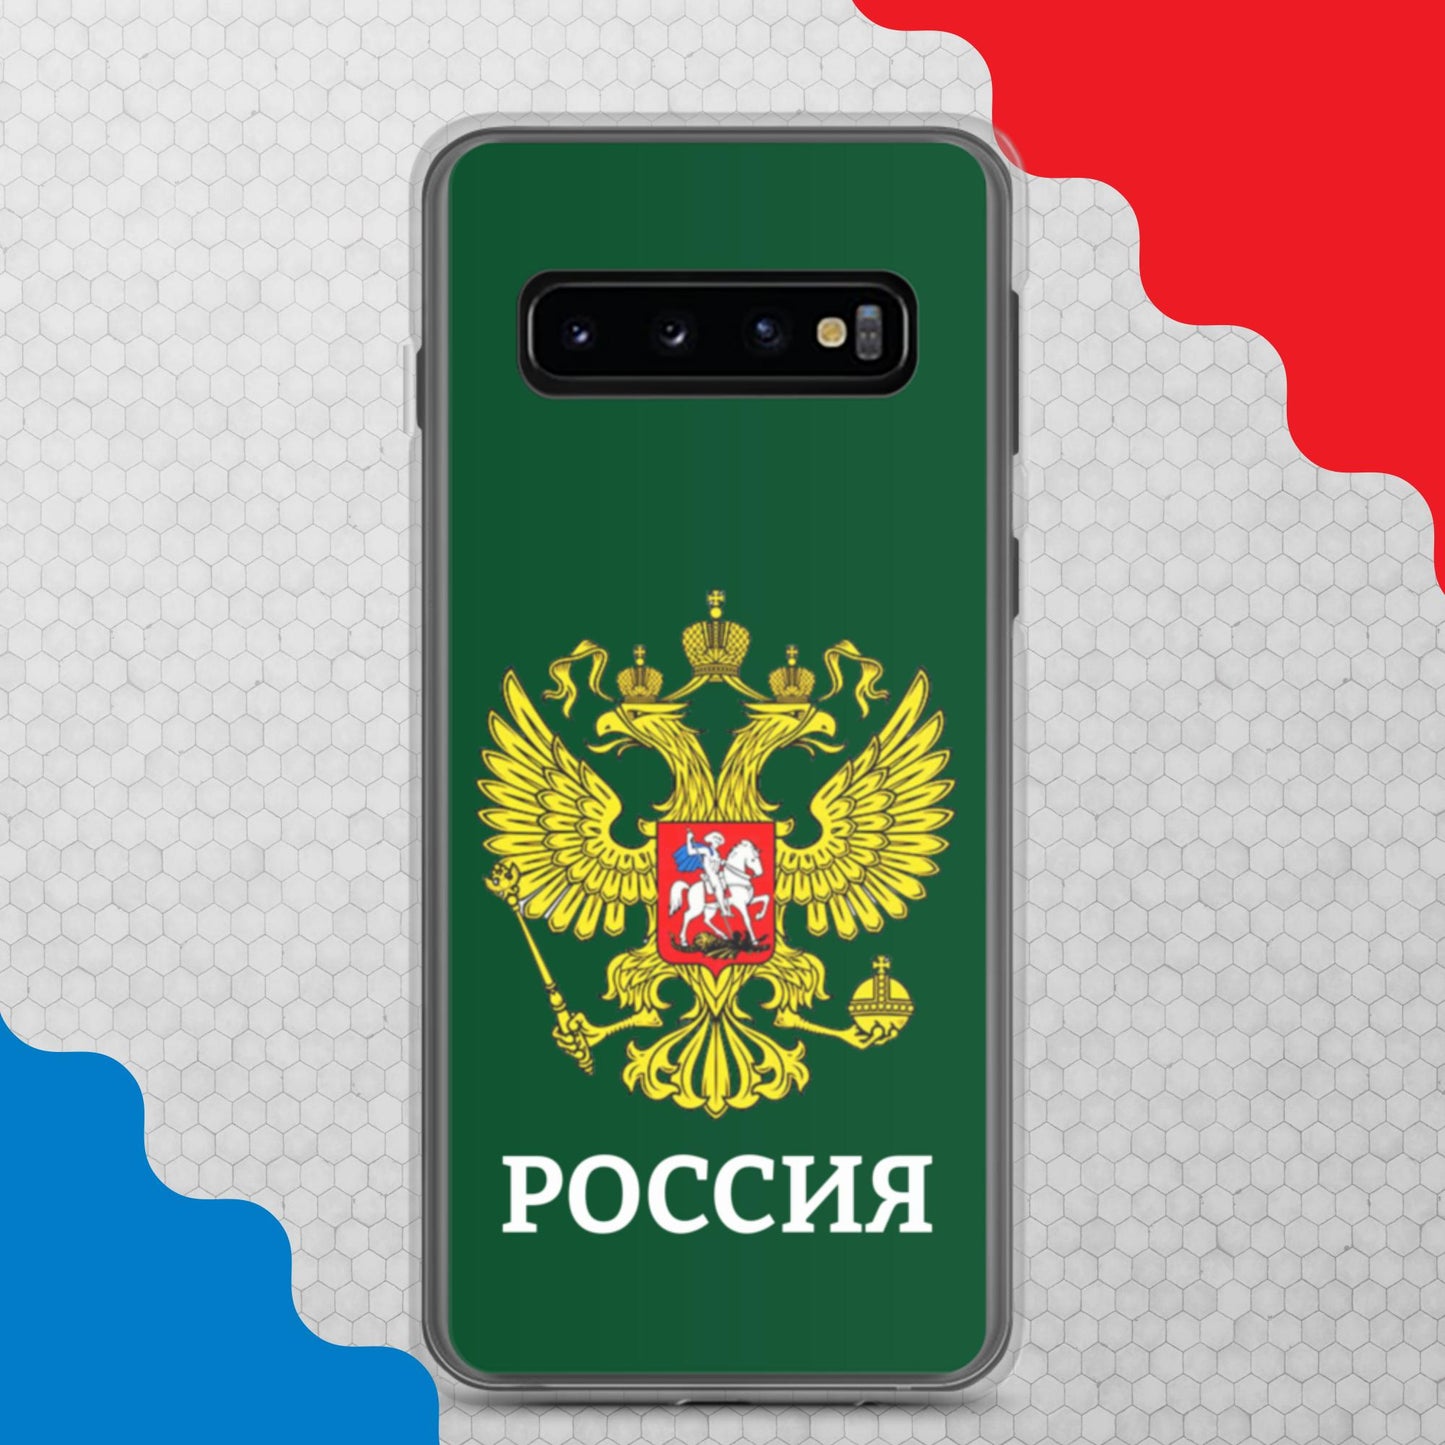 Samsung-Handyhülle mit Russland-Wappen in grün (alle Modelle)